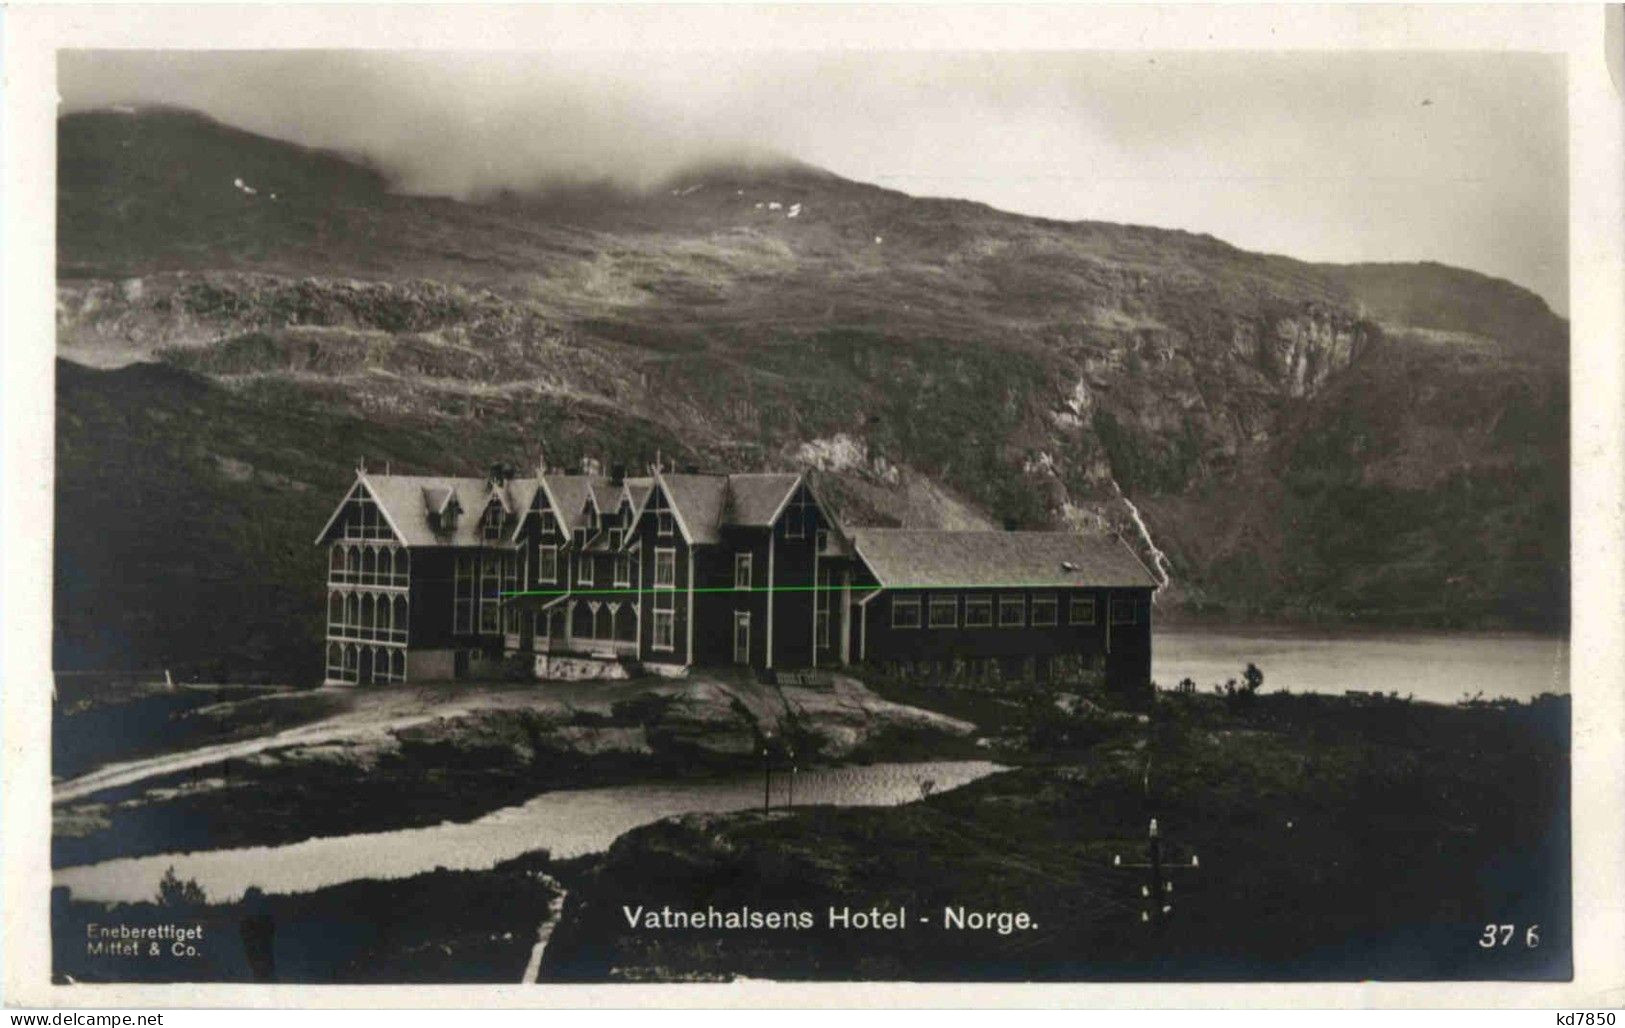 Vatnehalsens Hotel - Norway